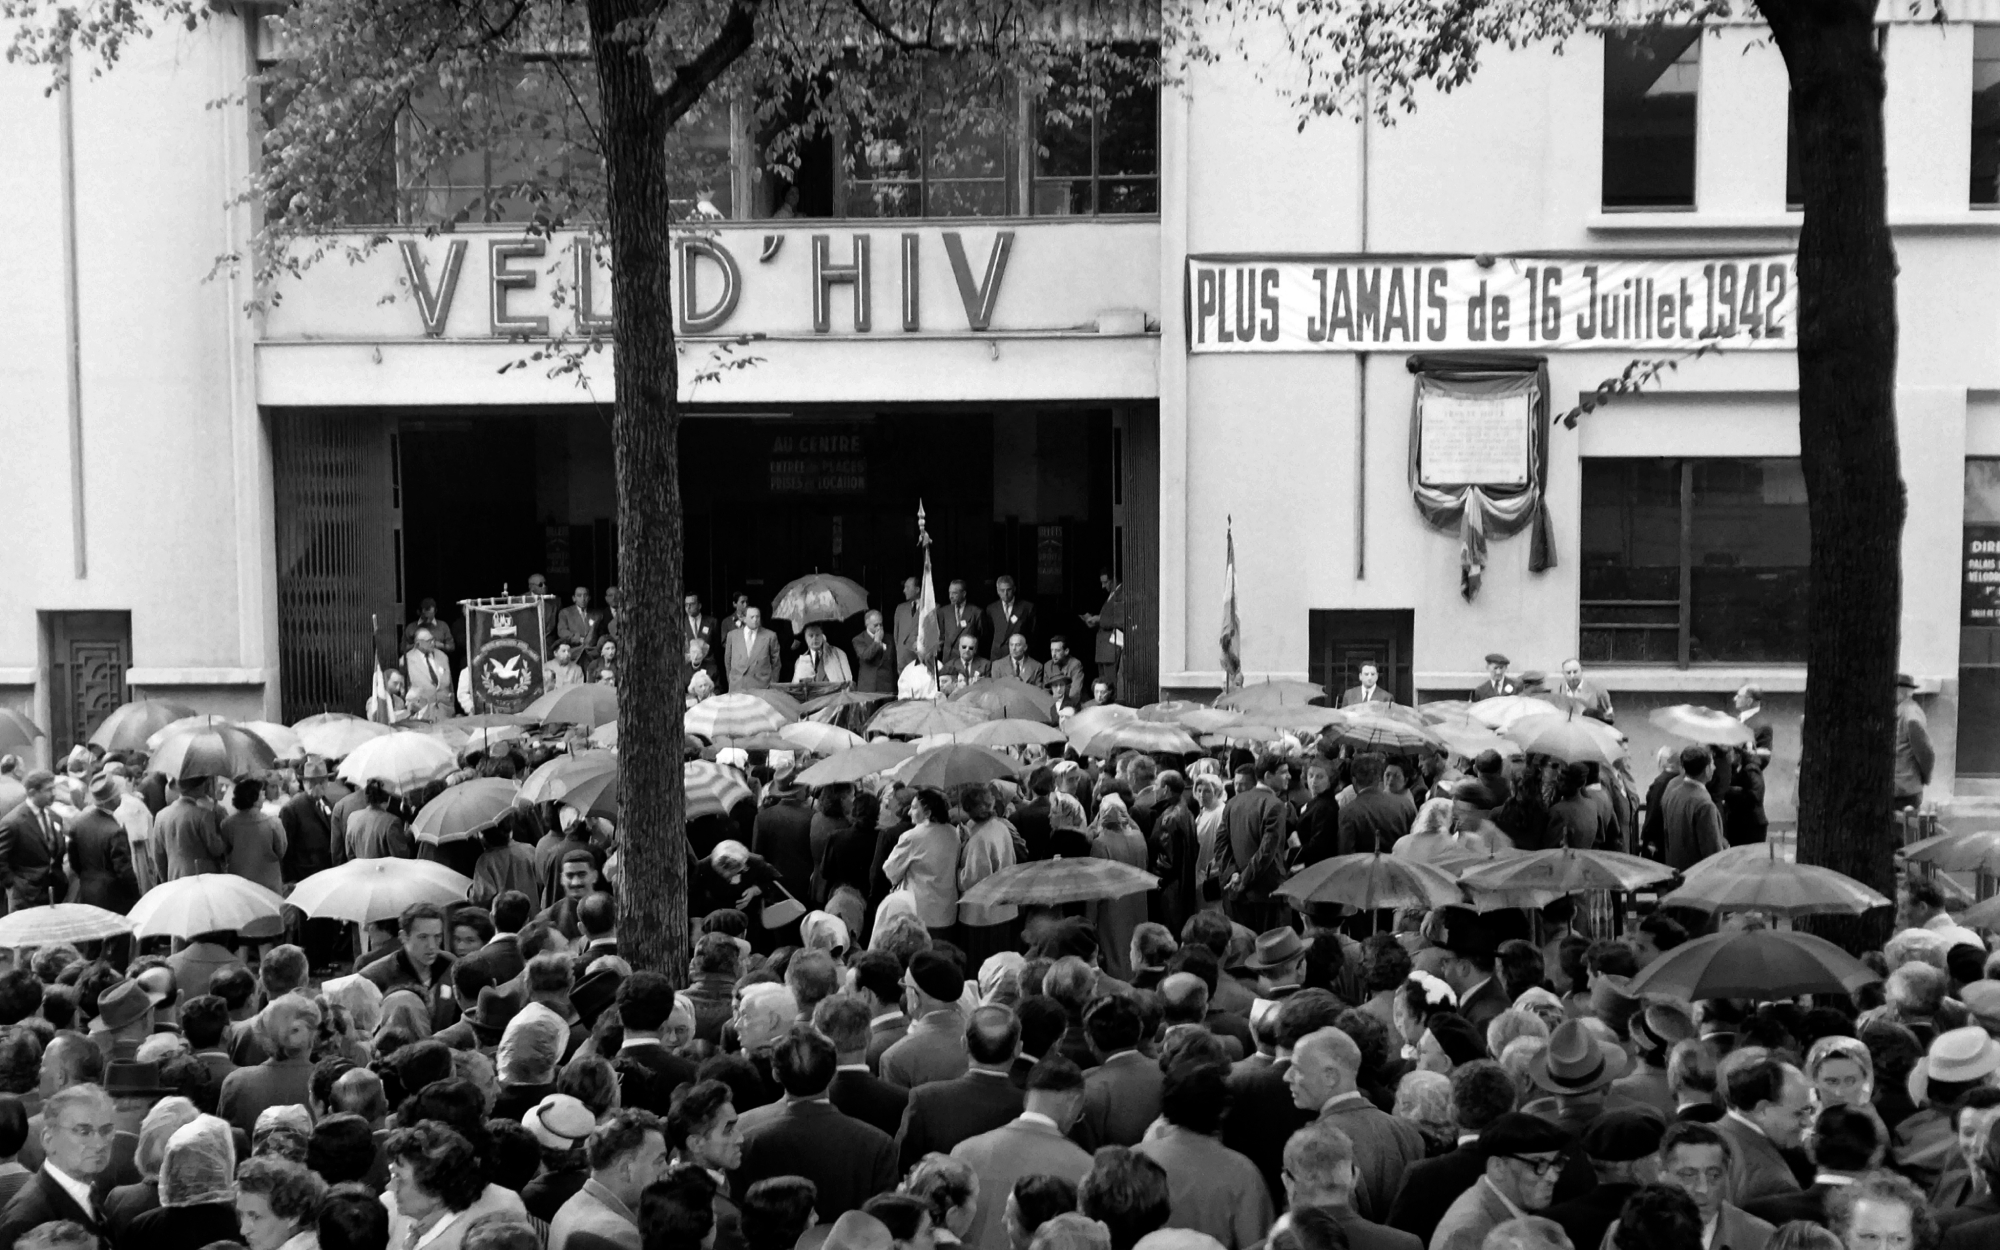 La foule se rassemble devant le Vélodrome d'Hiver le 16 juillet 1957 à Paris, lors de la commémoration de la rafle du Vél d'Hiv pendant la Seconde Guerre mondiale. AFP / INTERCONTINENTALE